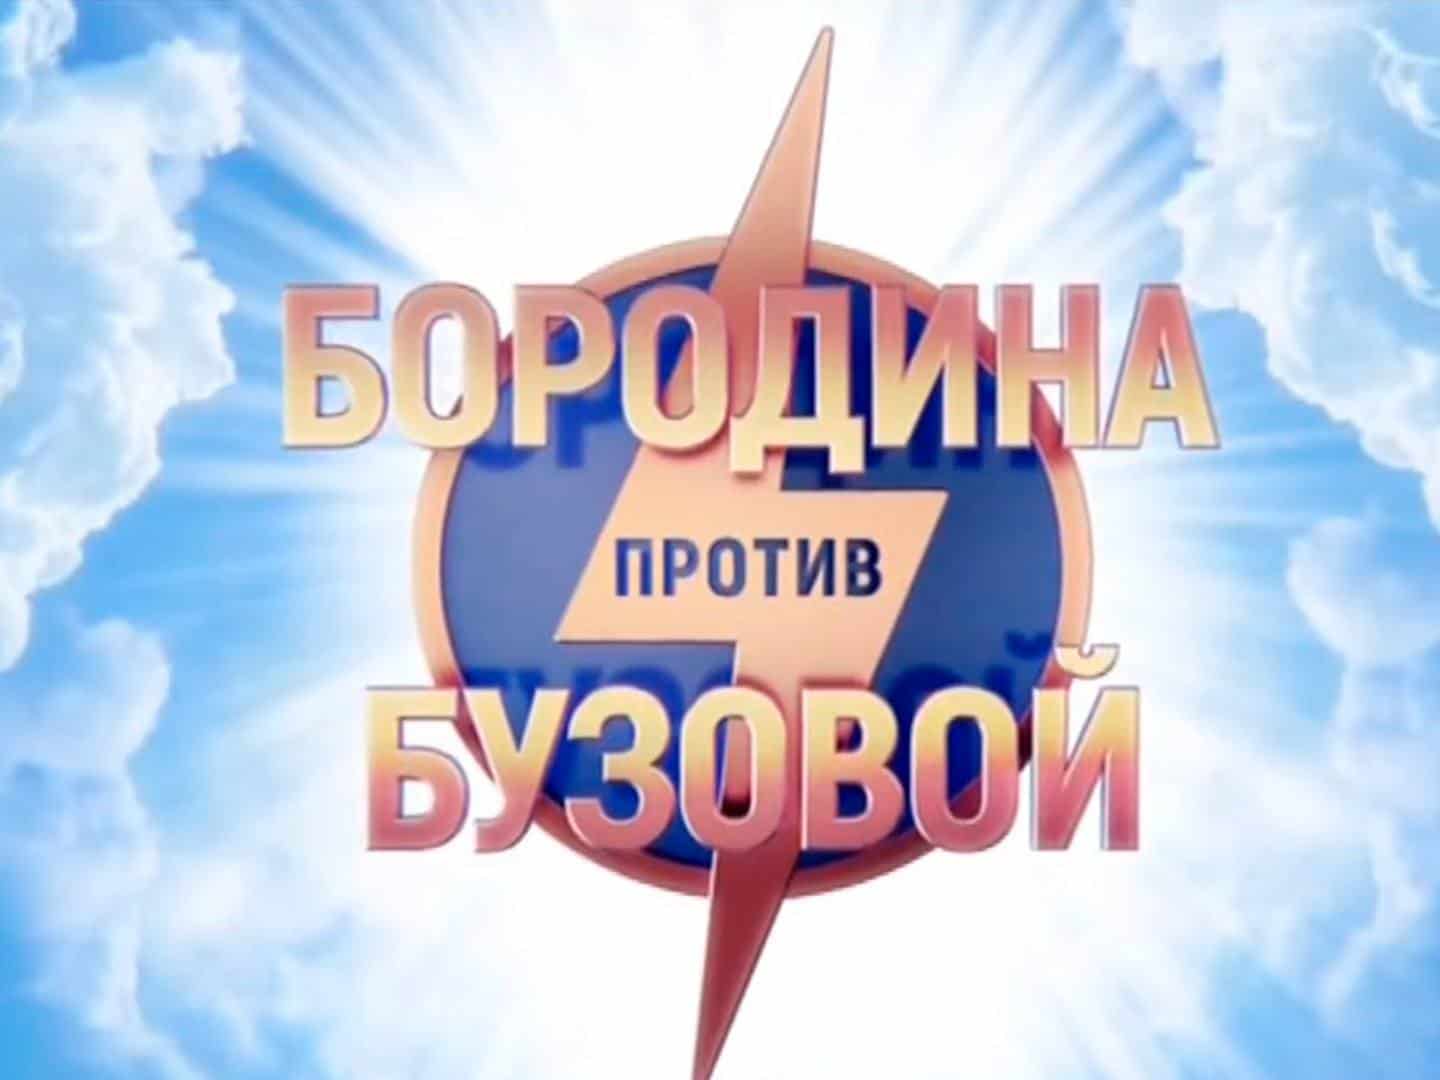 Бородина-против-Бузовой-265-серия